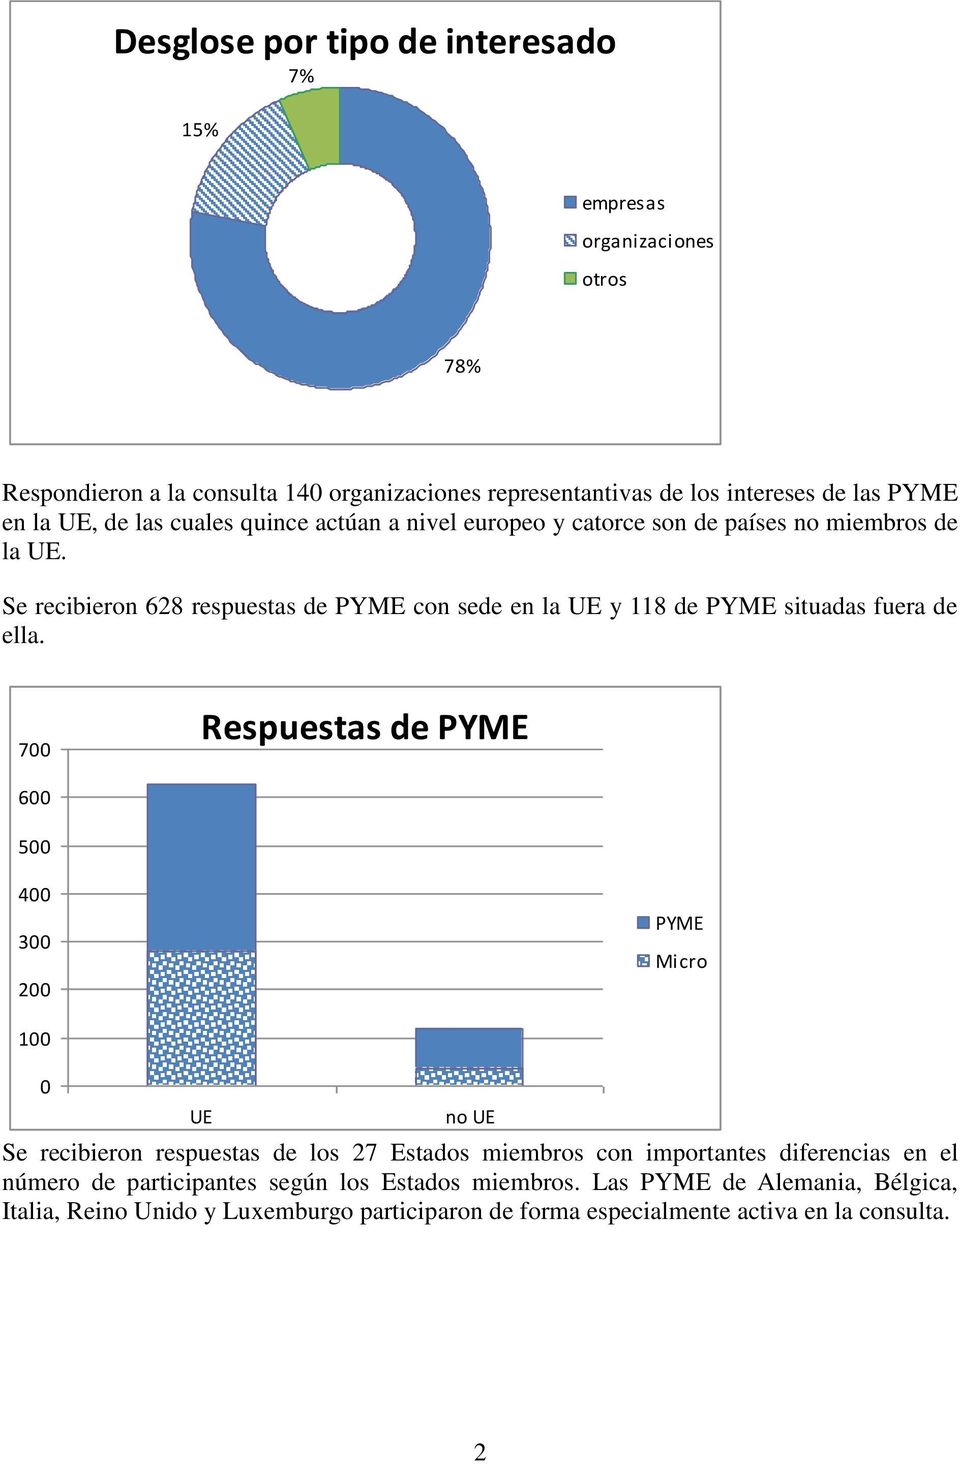 Se recibieron 628 respuestas de PYME con sede en la UE y 118 de PYME situadas fuera de ella.